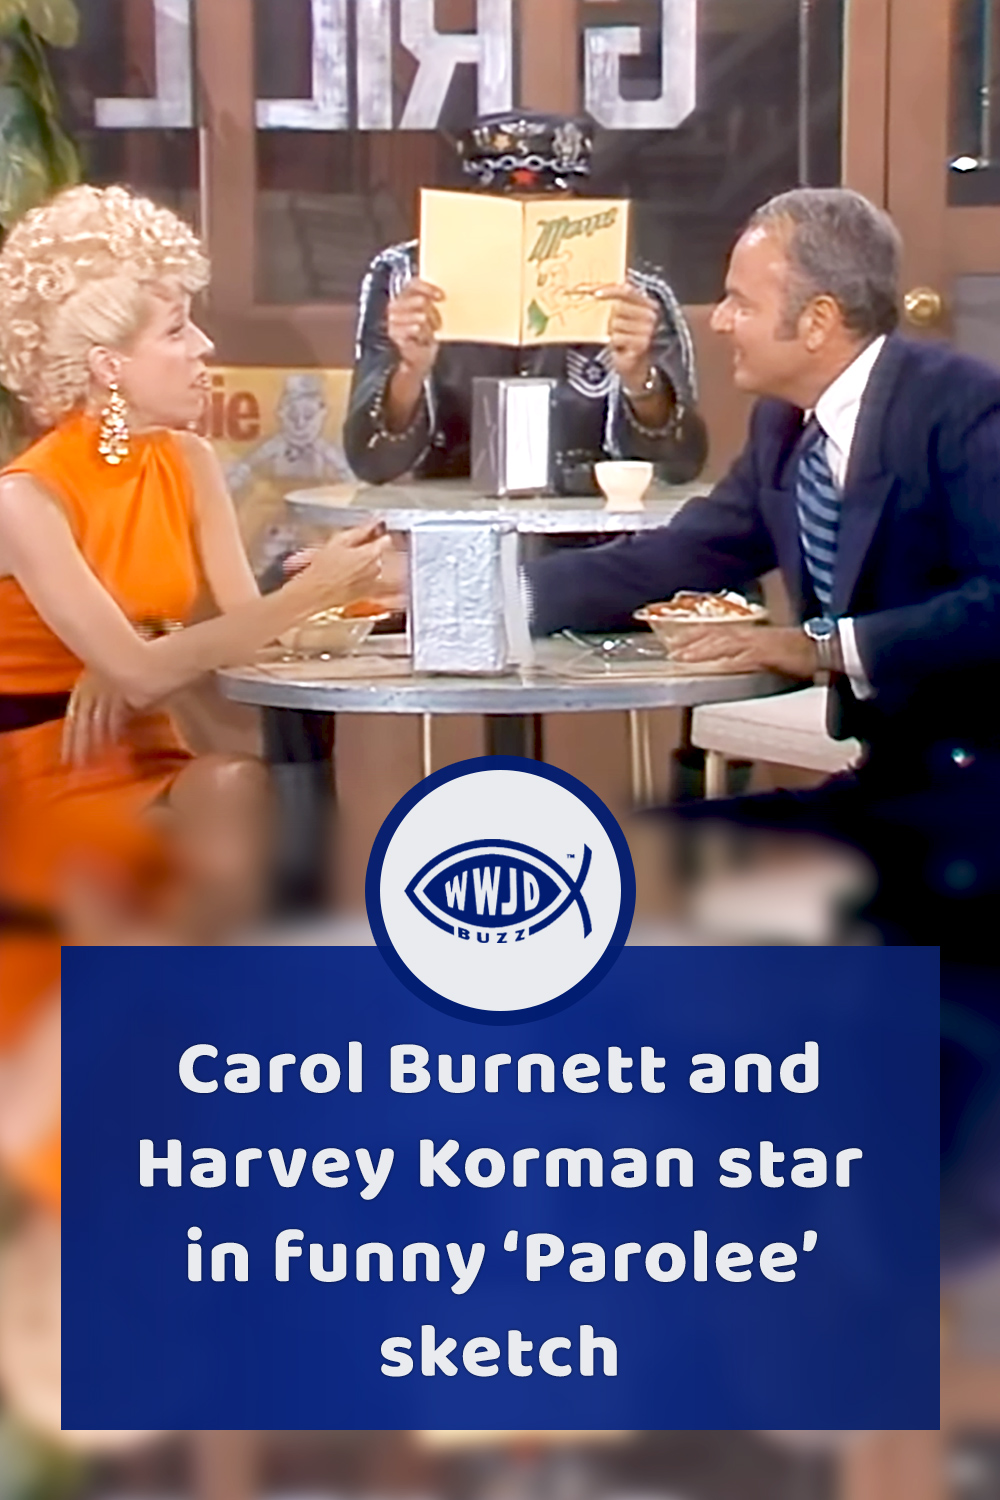 Carol Burnett and Harvey Korman star in funny ‘Parolee’ sketch